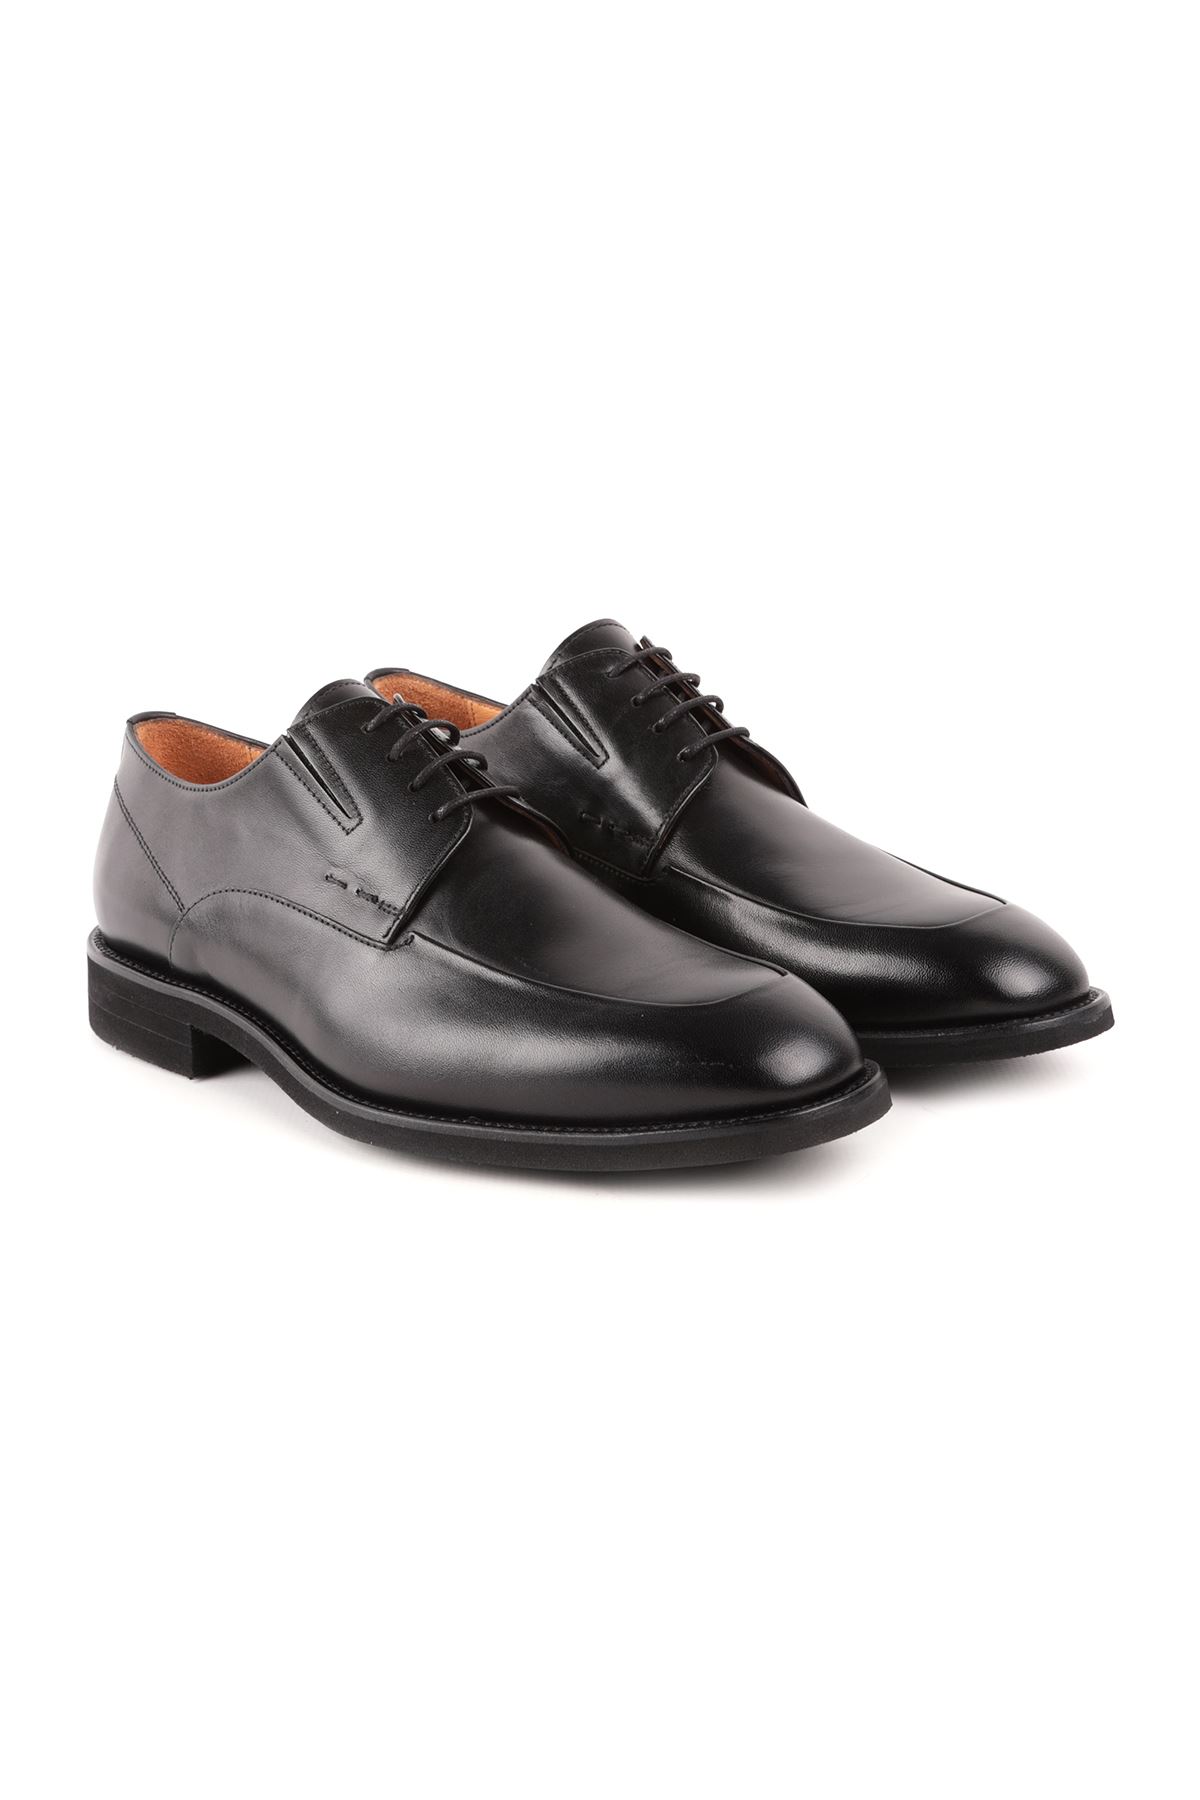 Libero L4803 Siyah Klasik Deri Erkek Ayakkabı 